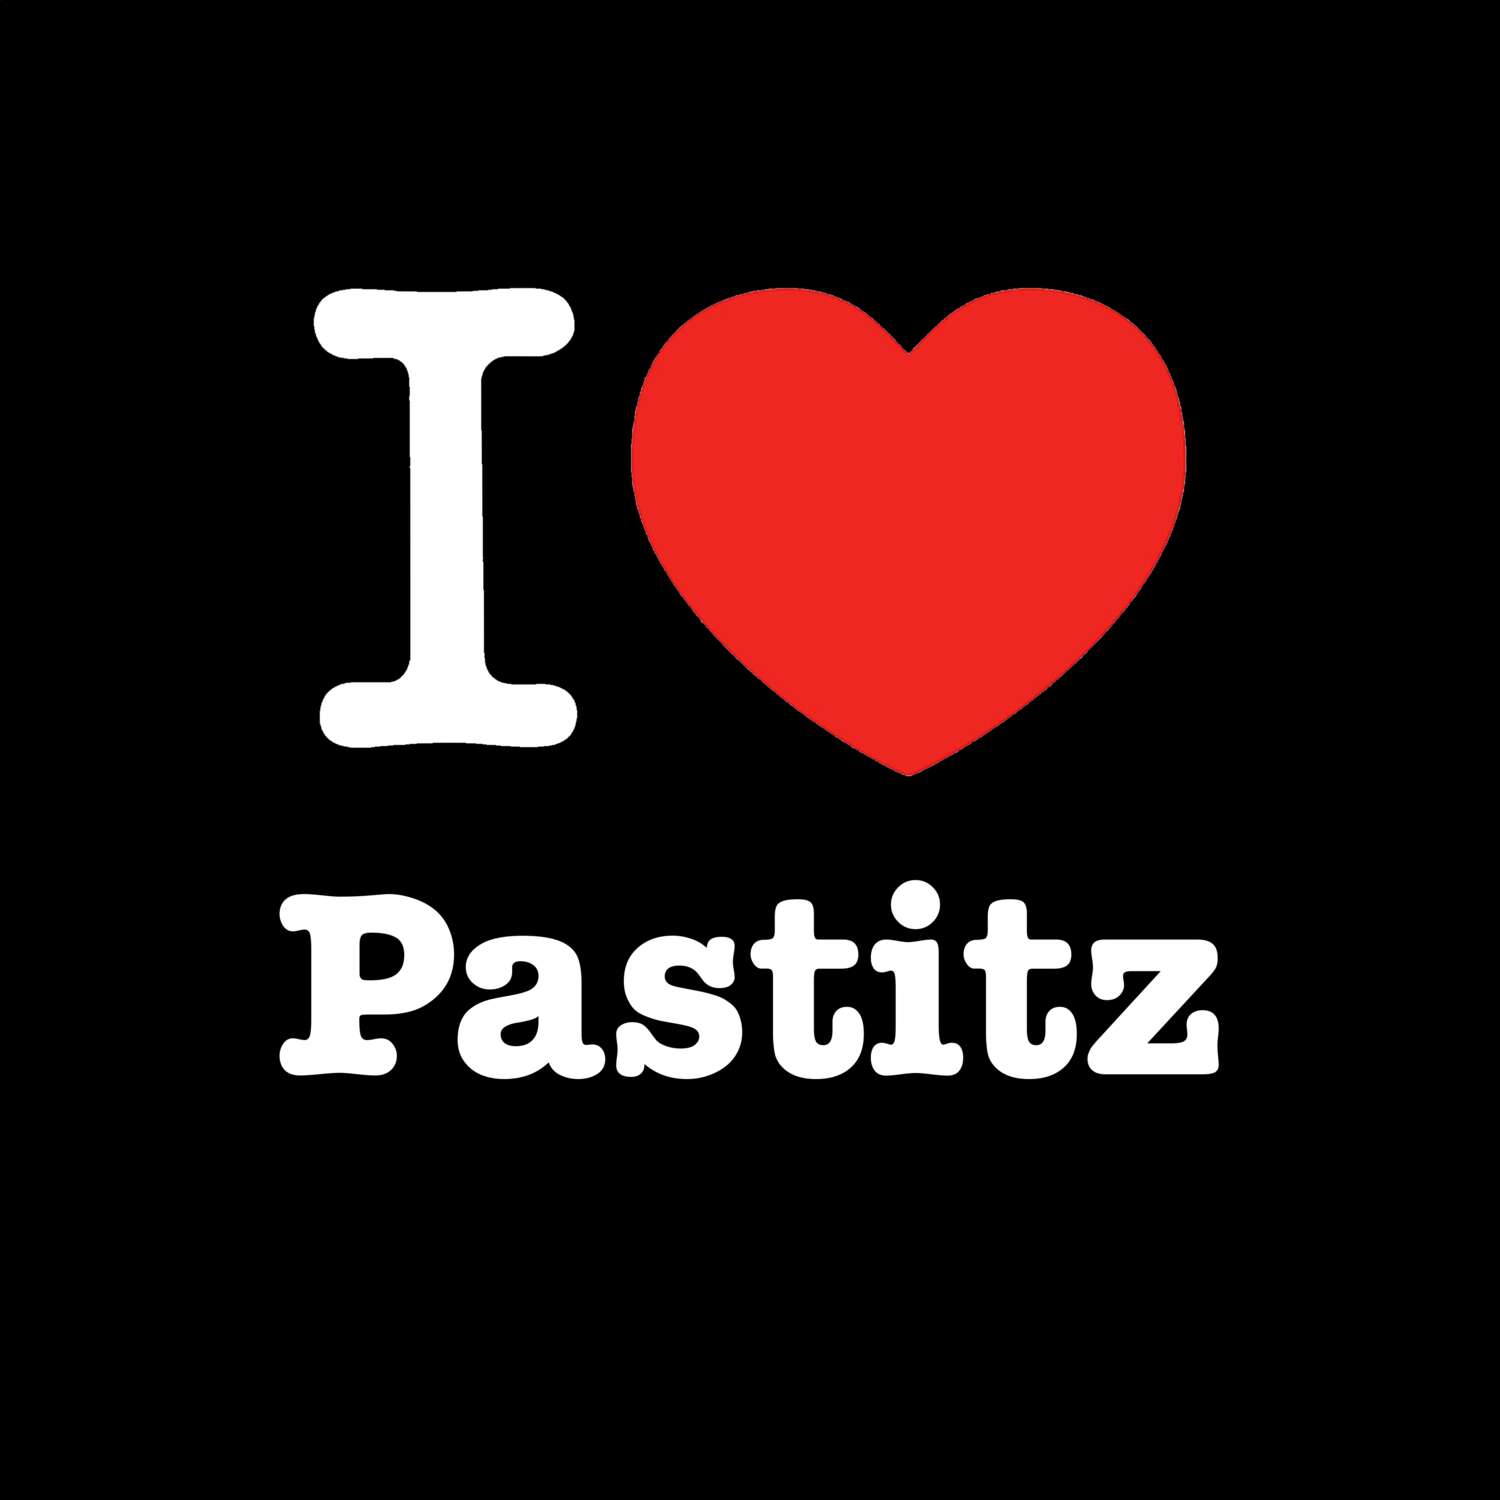 Pastitz T-Shirt »I love«